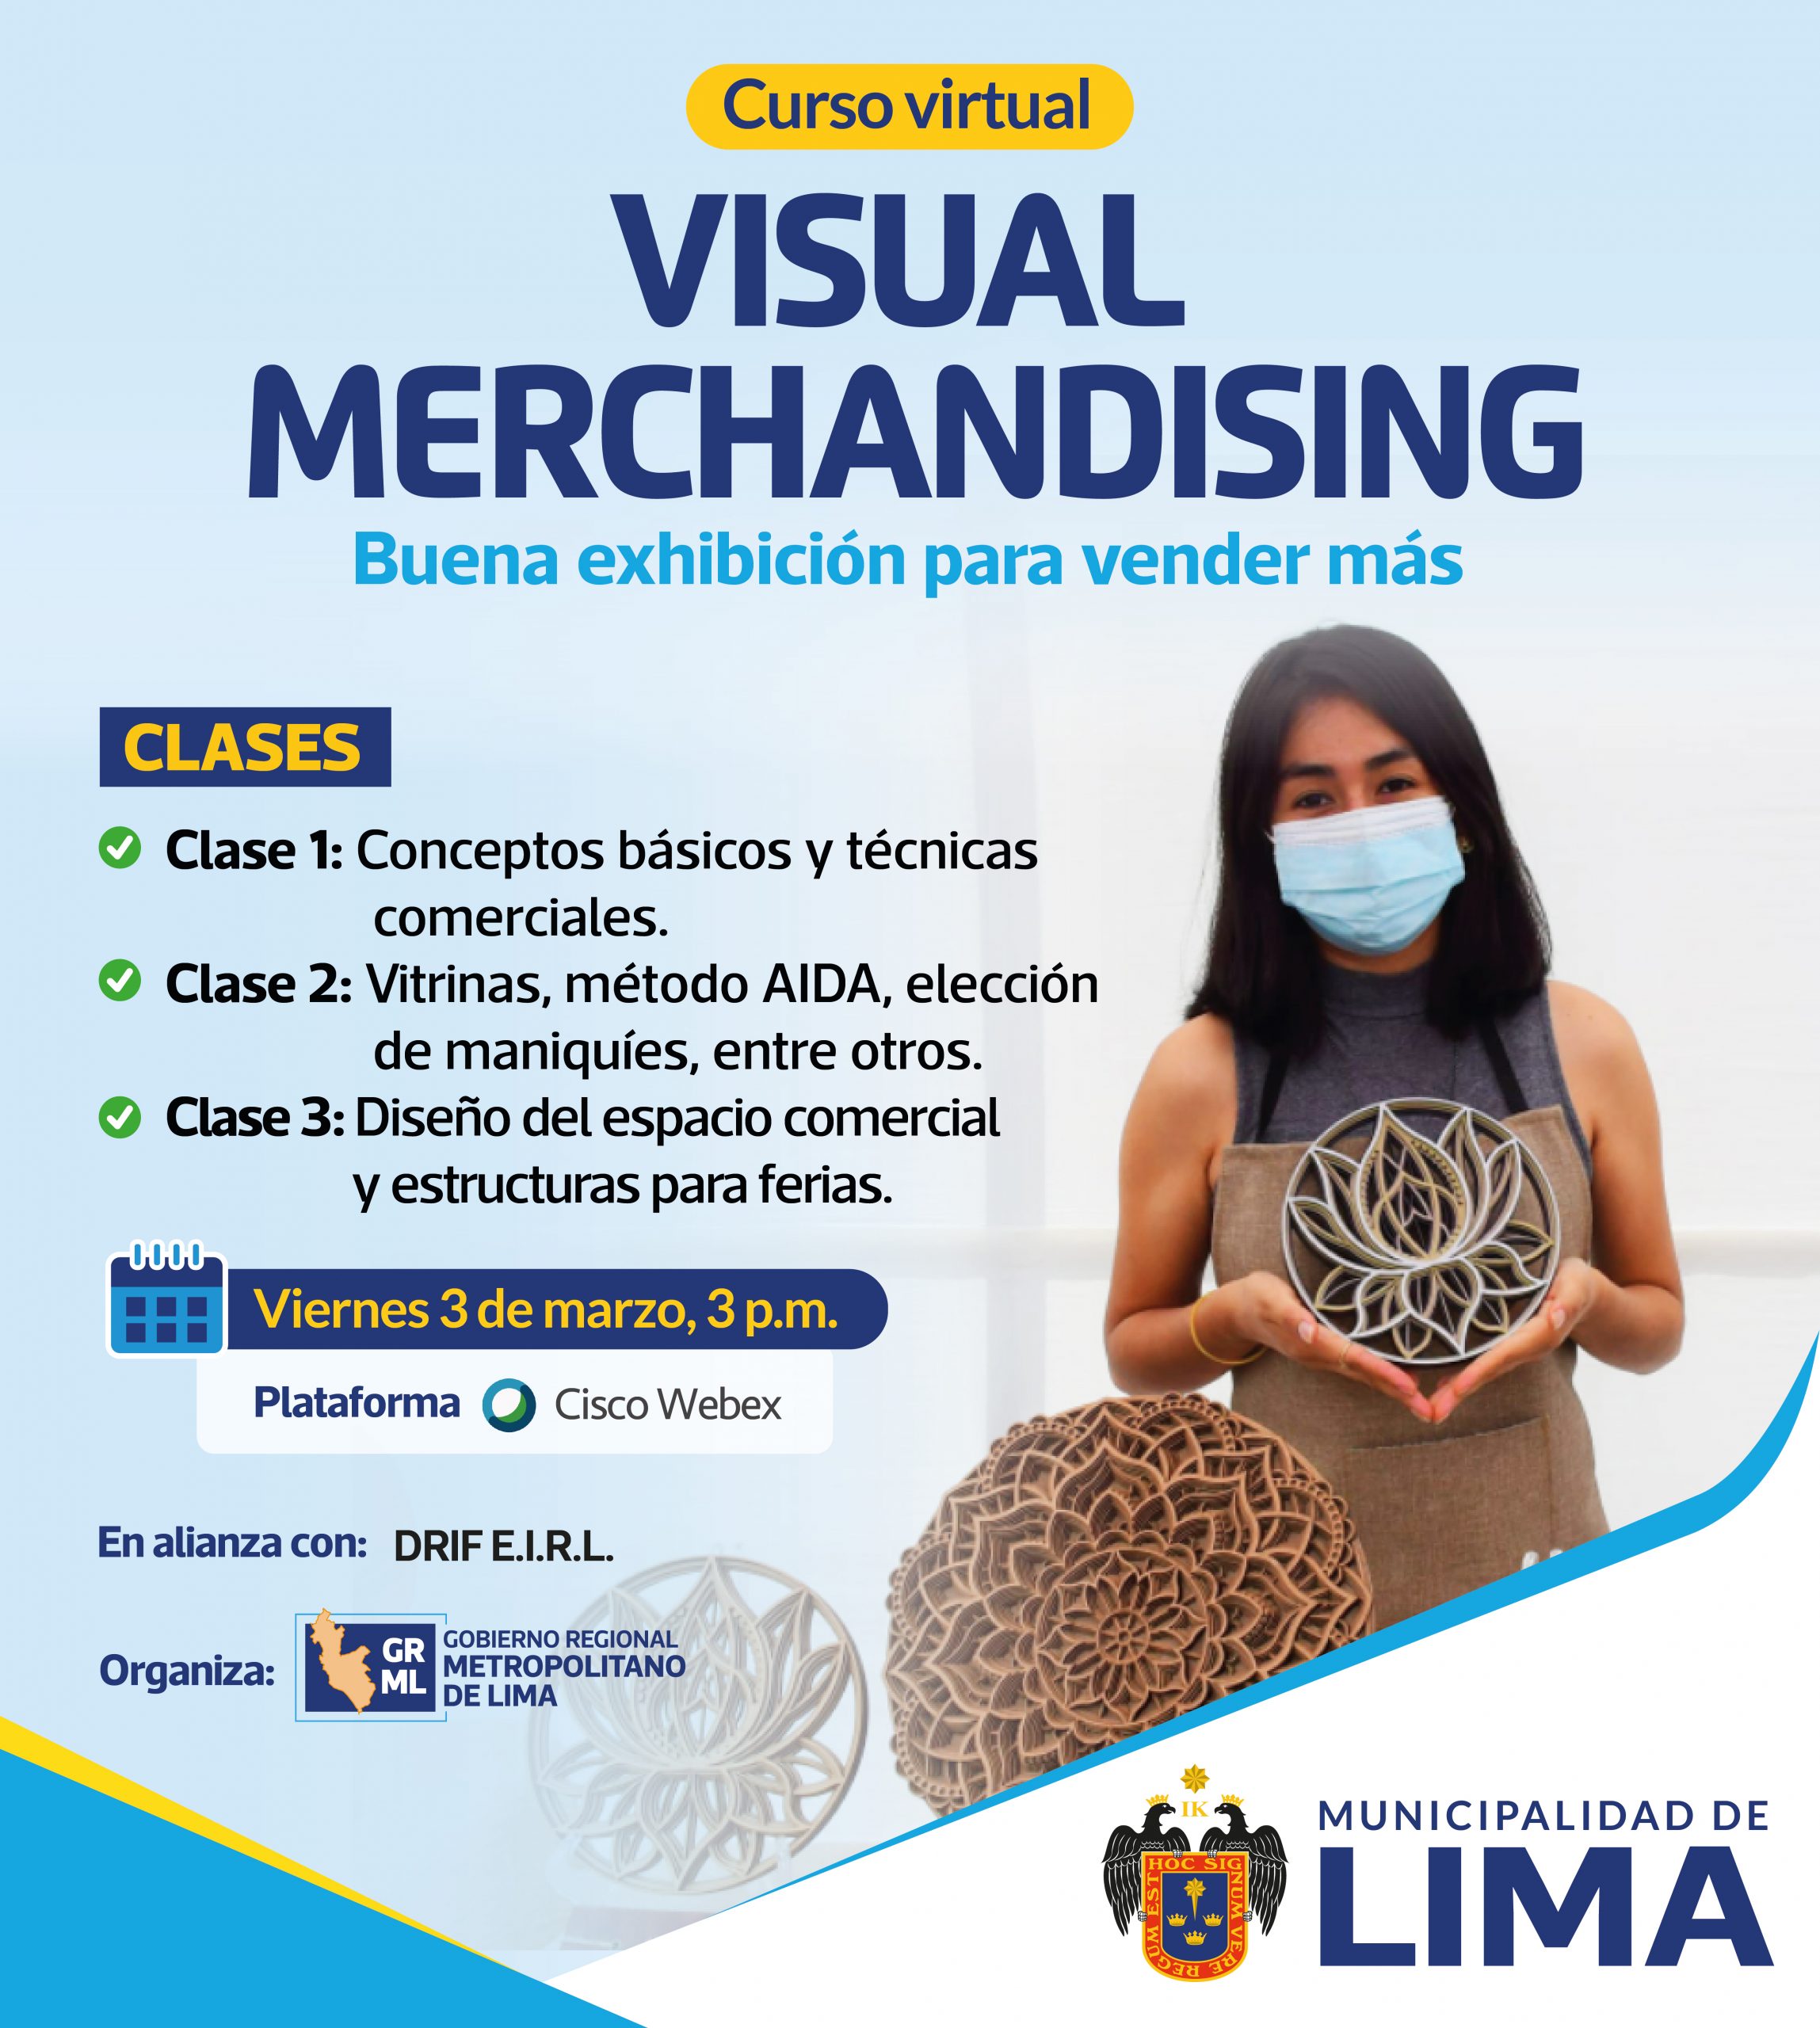 visual merchandising